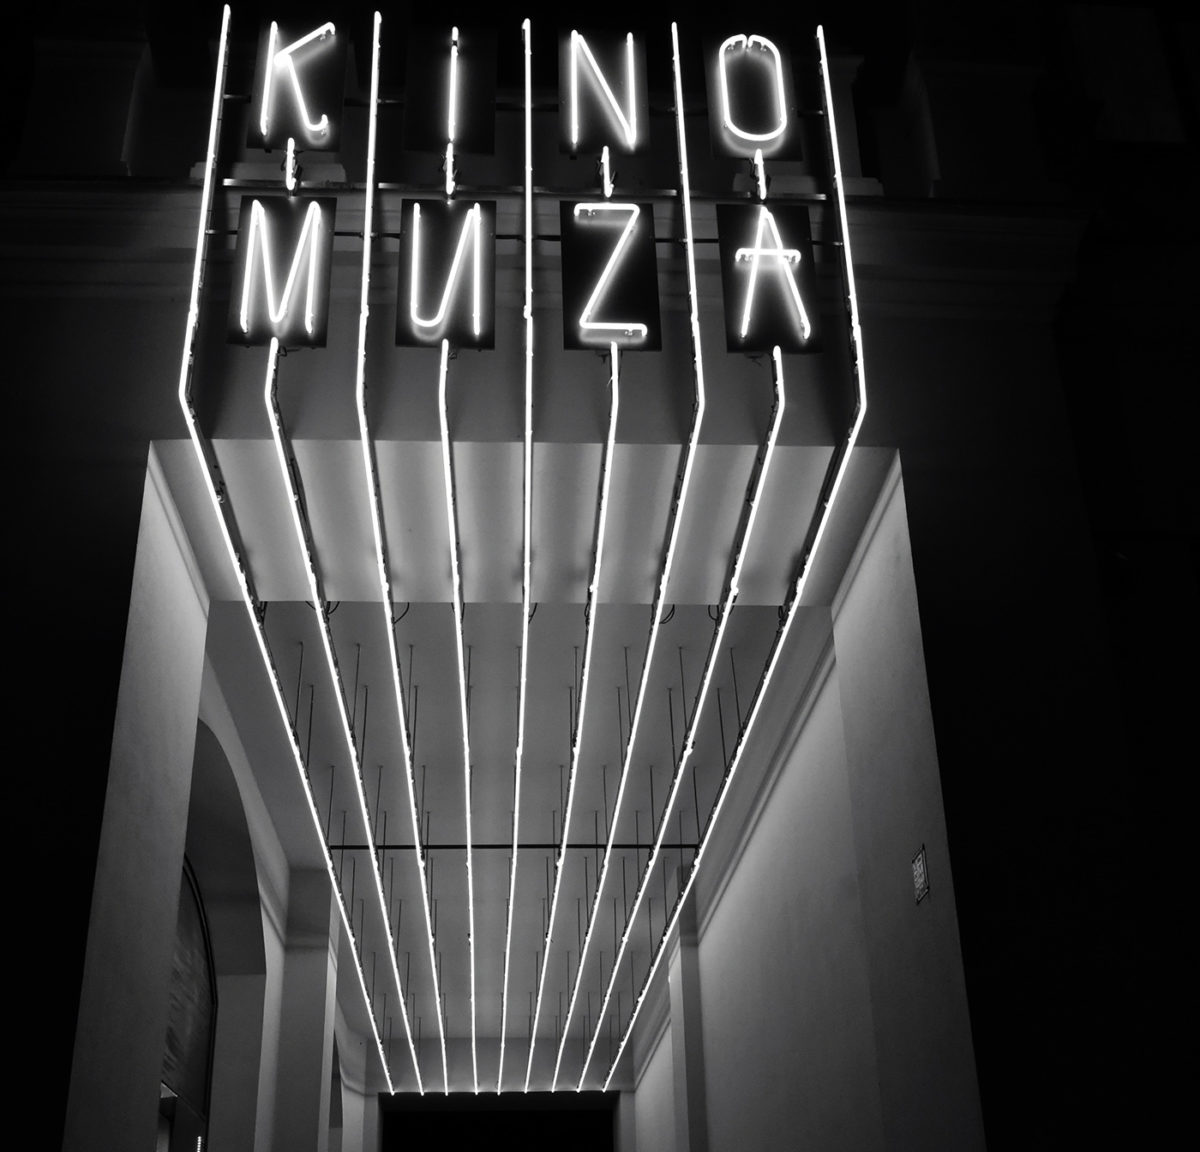 Odpalenie neonu Kina Muza w Poznaniu - galeria - zdjęcie 12.